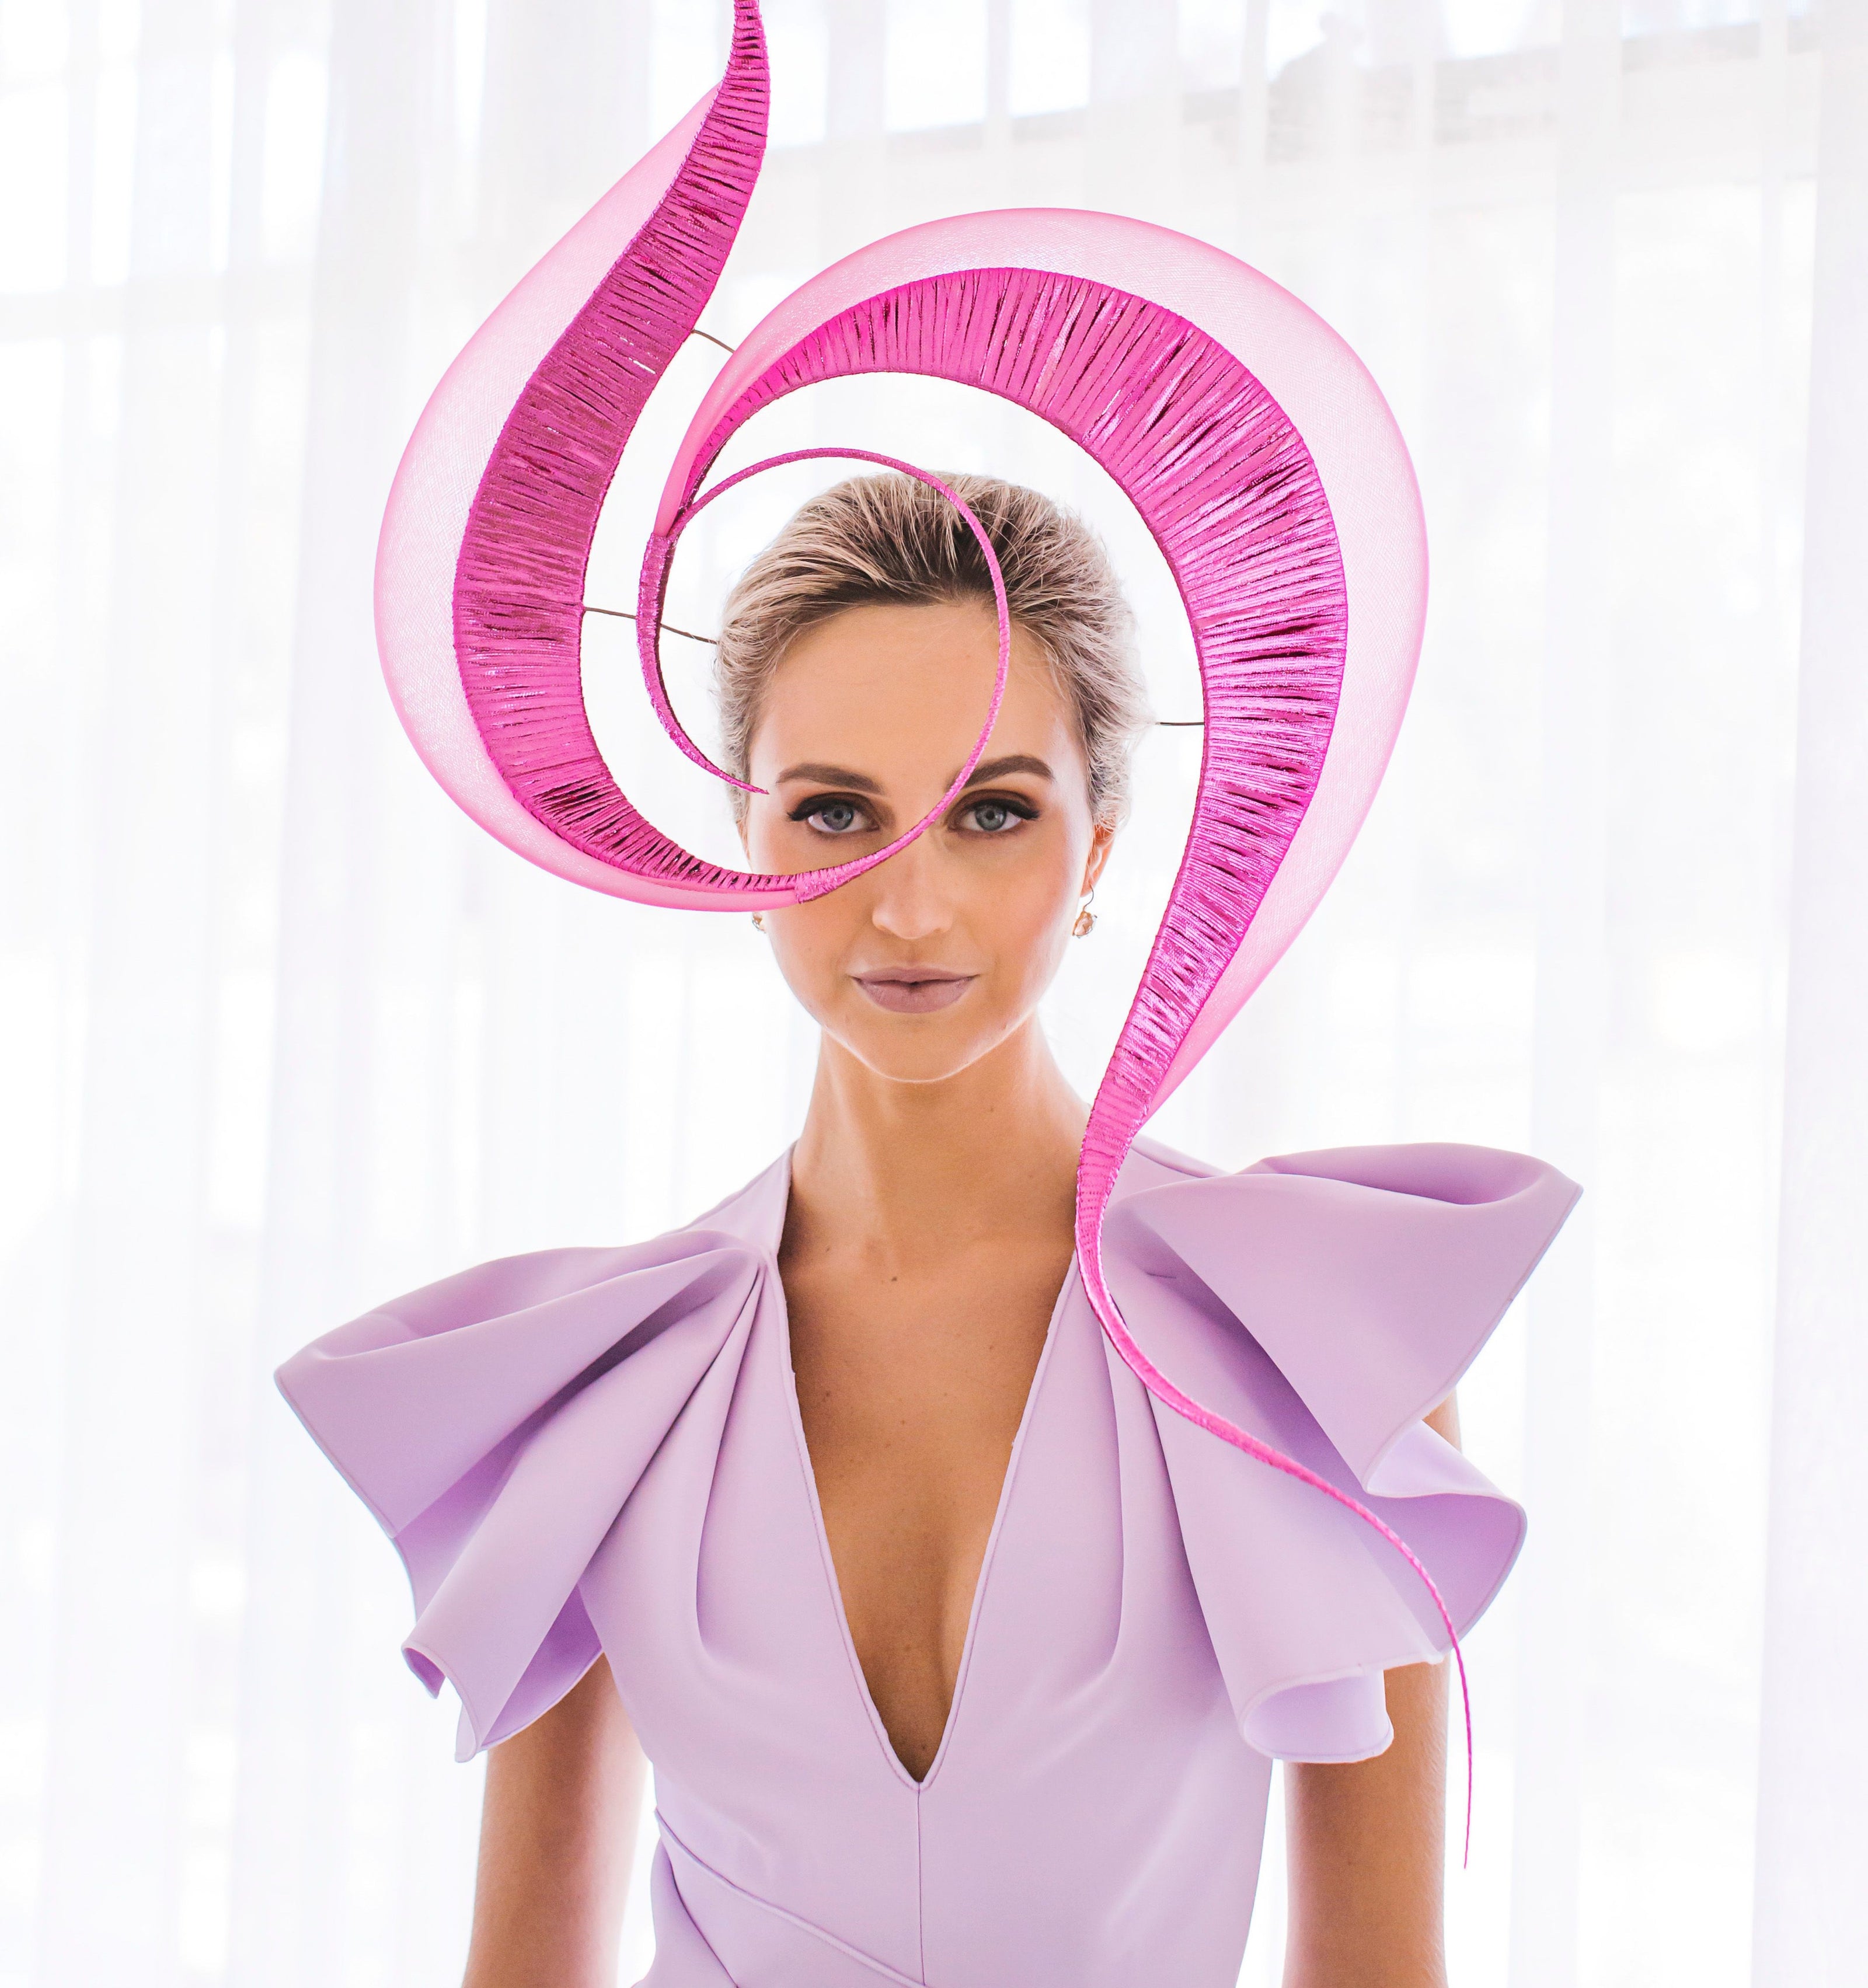 Bright pink designer hat for Melbourne Spring Racing Carnival 